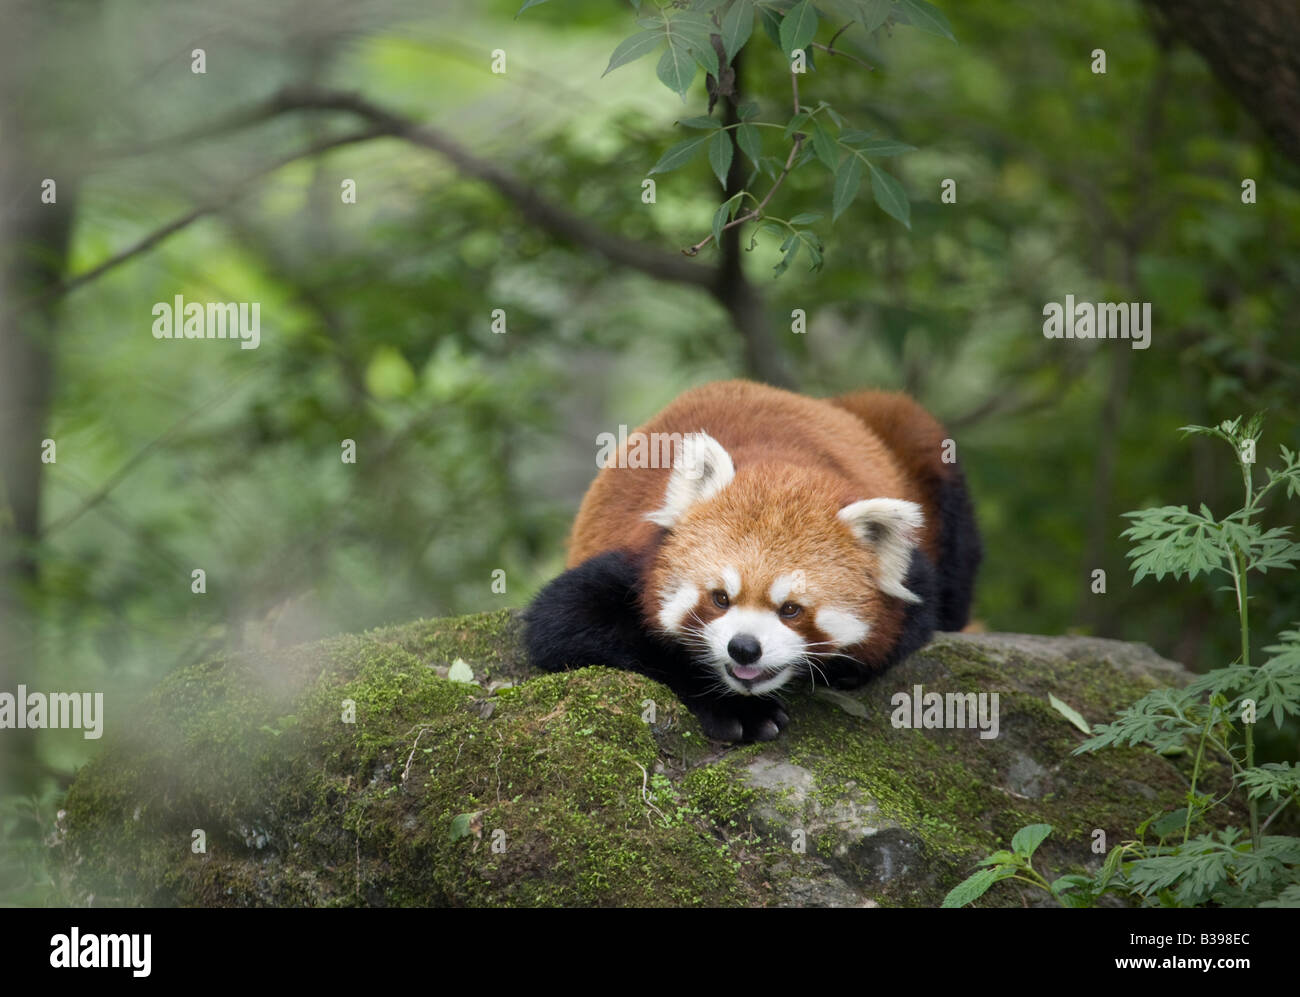 Le panda rouge (Ailurus fulgens) dans la réserve naturelle de Wolong forêt montagnarde, Chine Banque D'Images